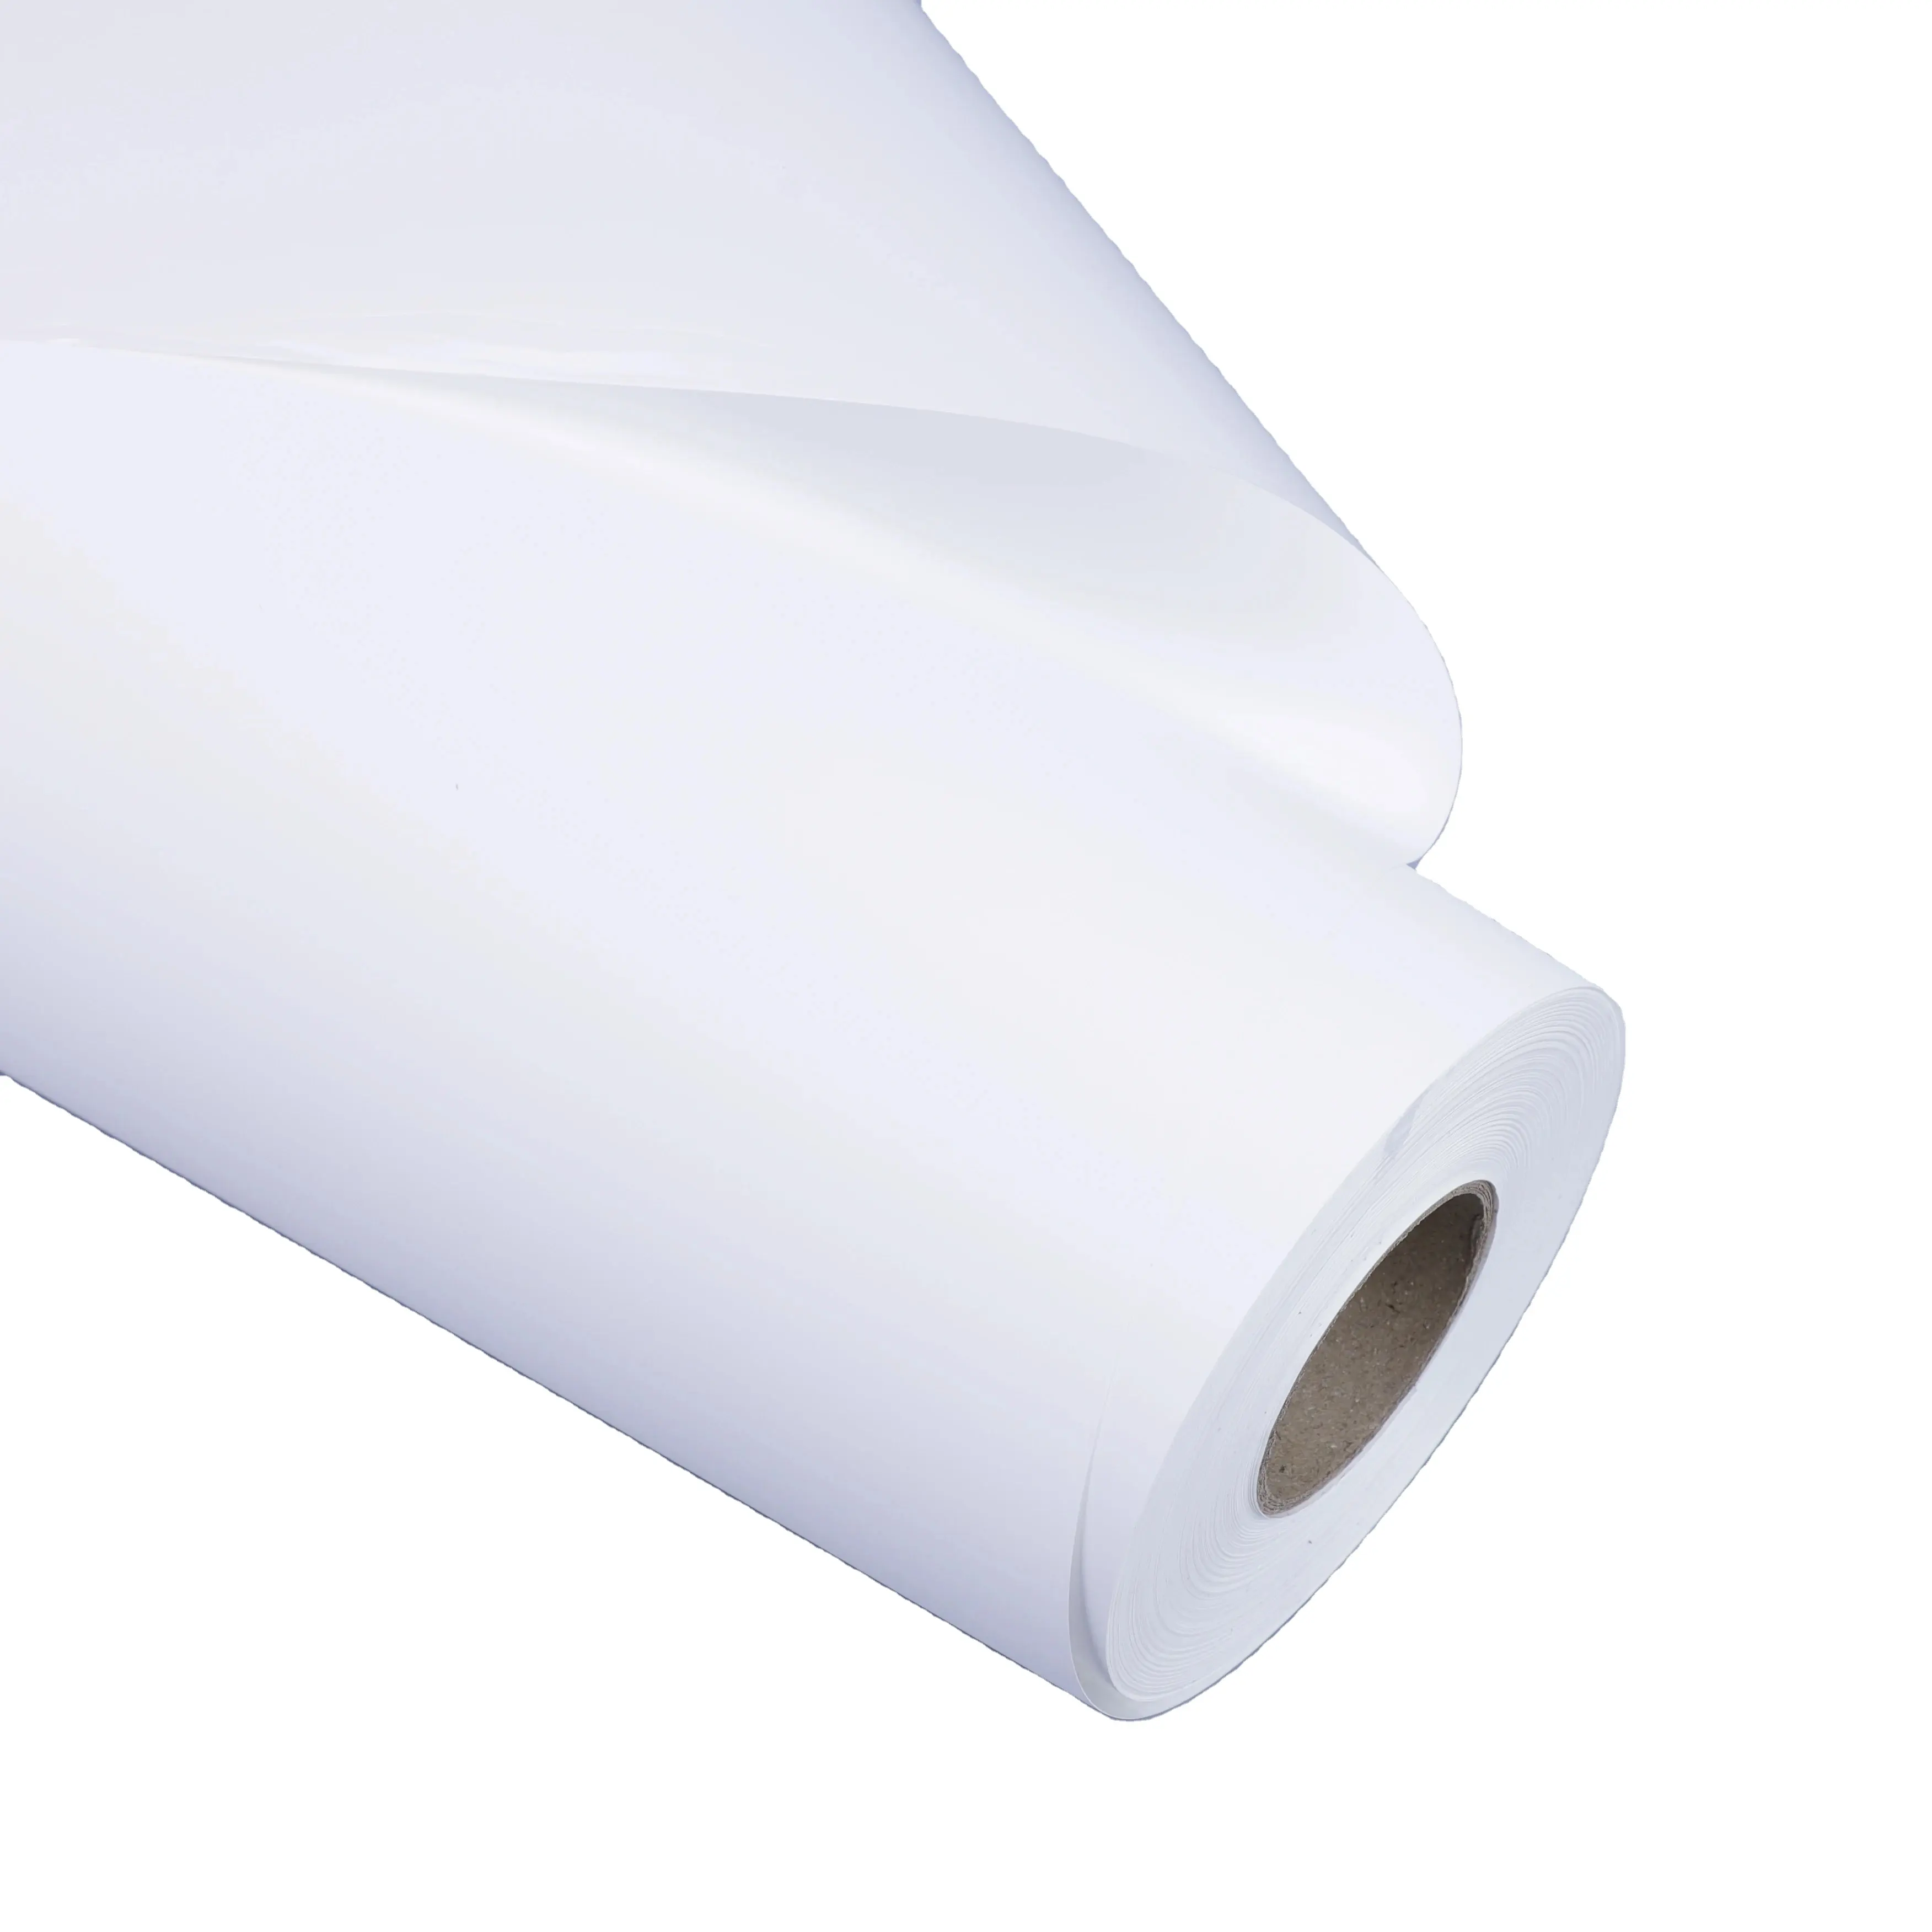 맞춤형 방수 잉크젯-그래픽 인쇄용 인쇄 가능한 매트 자체 접착 PP 합성 종이 롤